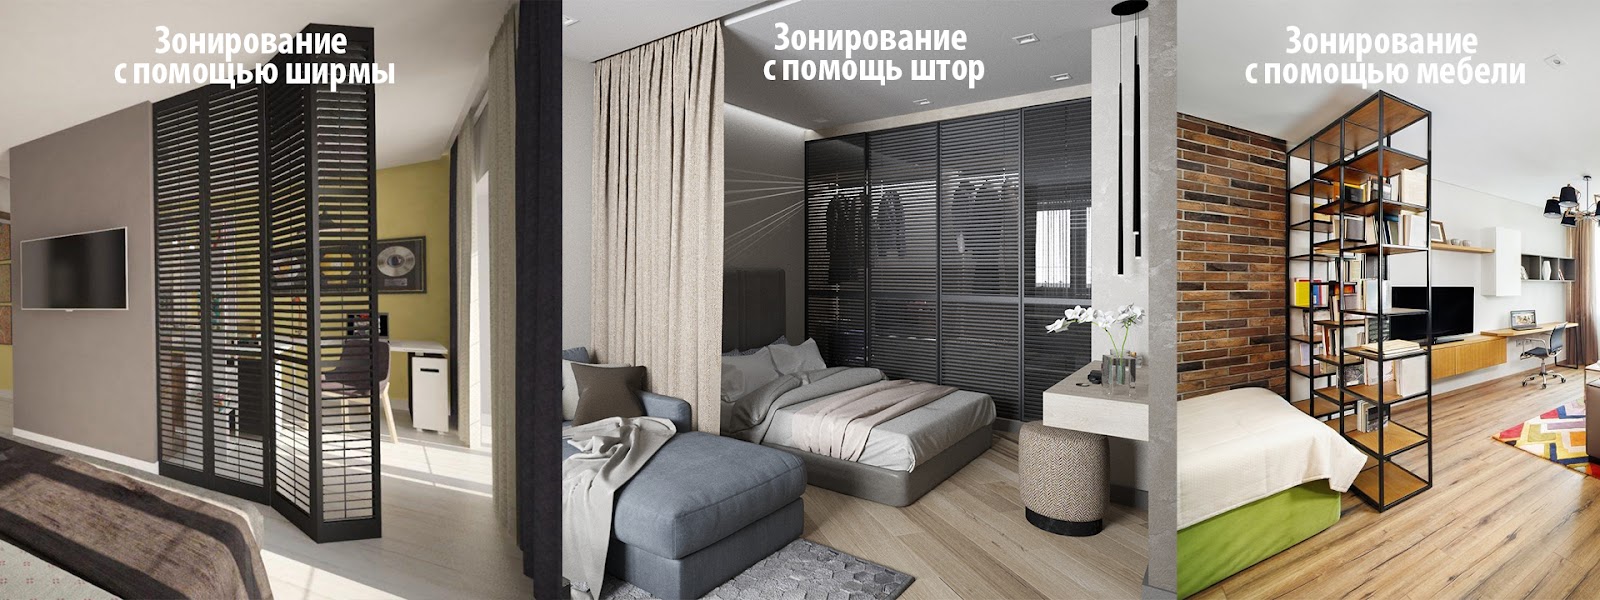 Спальни-гостиные + Фото и Идей для Интерьера и Ремонта спальни-студии — Дизайн PORTES Киев